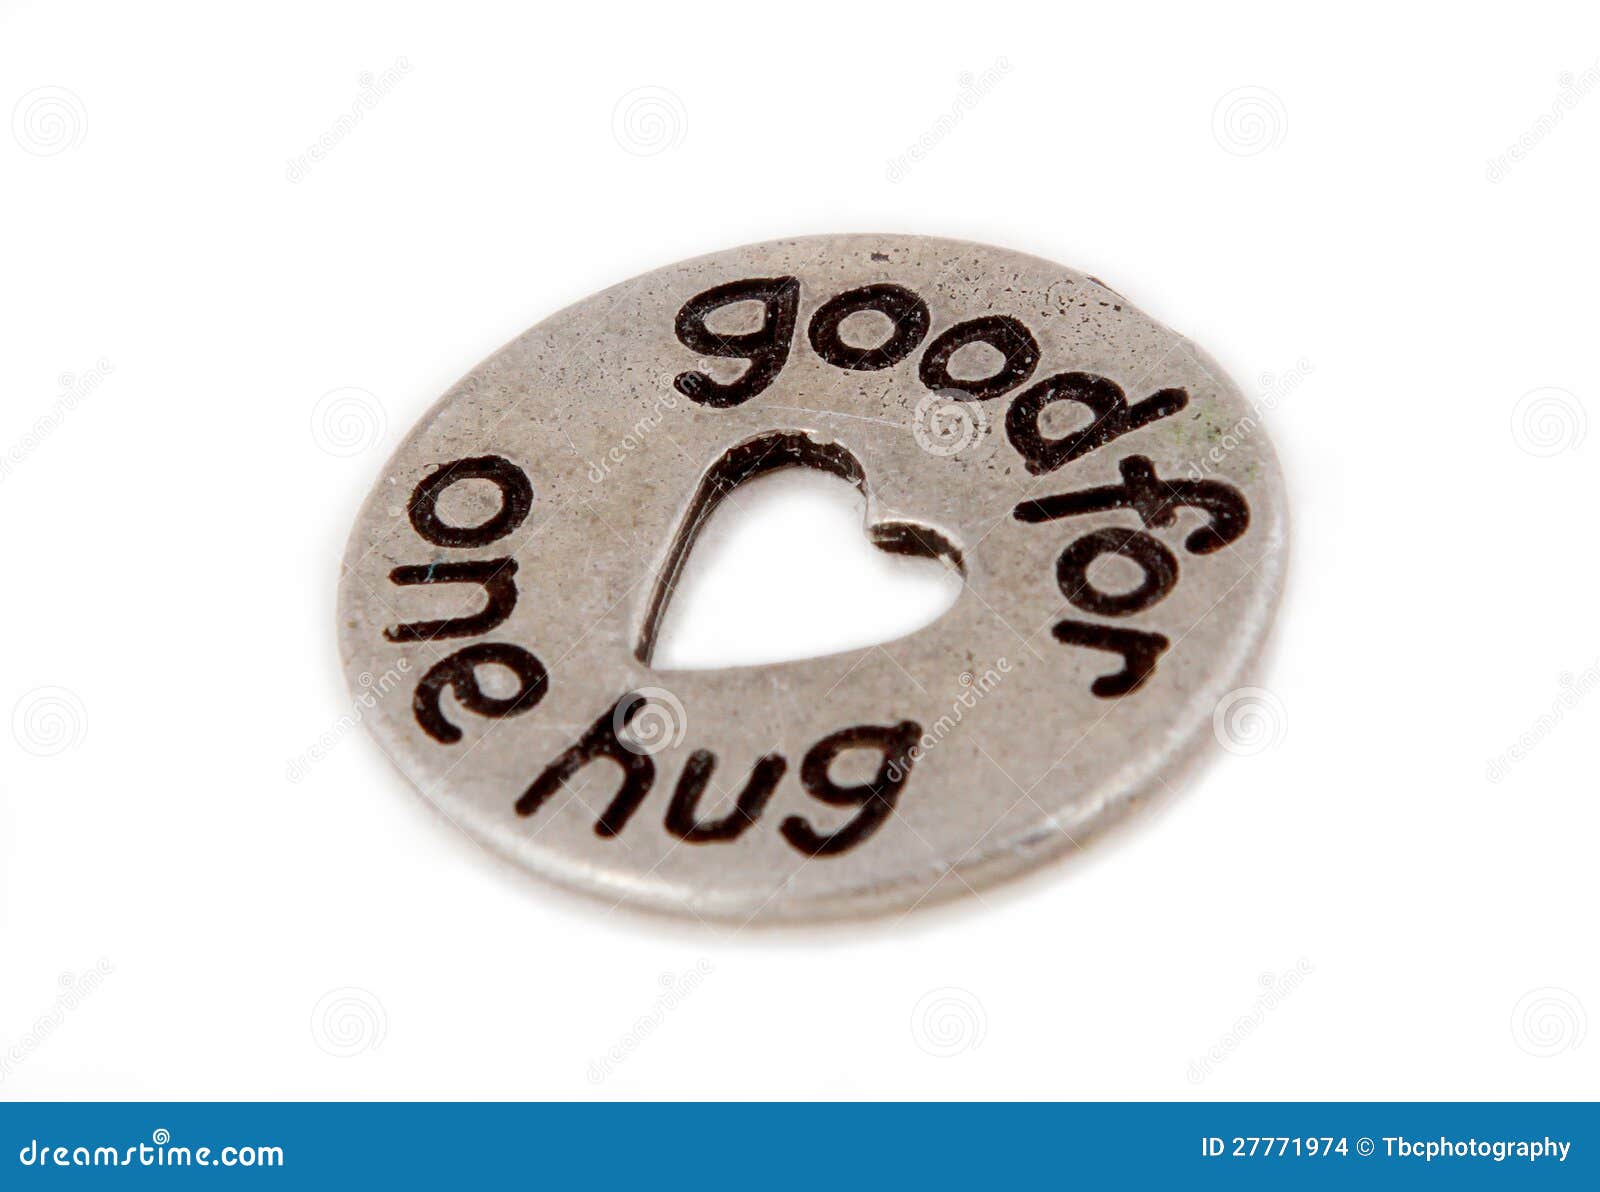 token hug coin